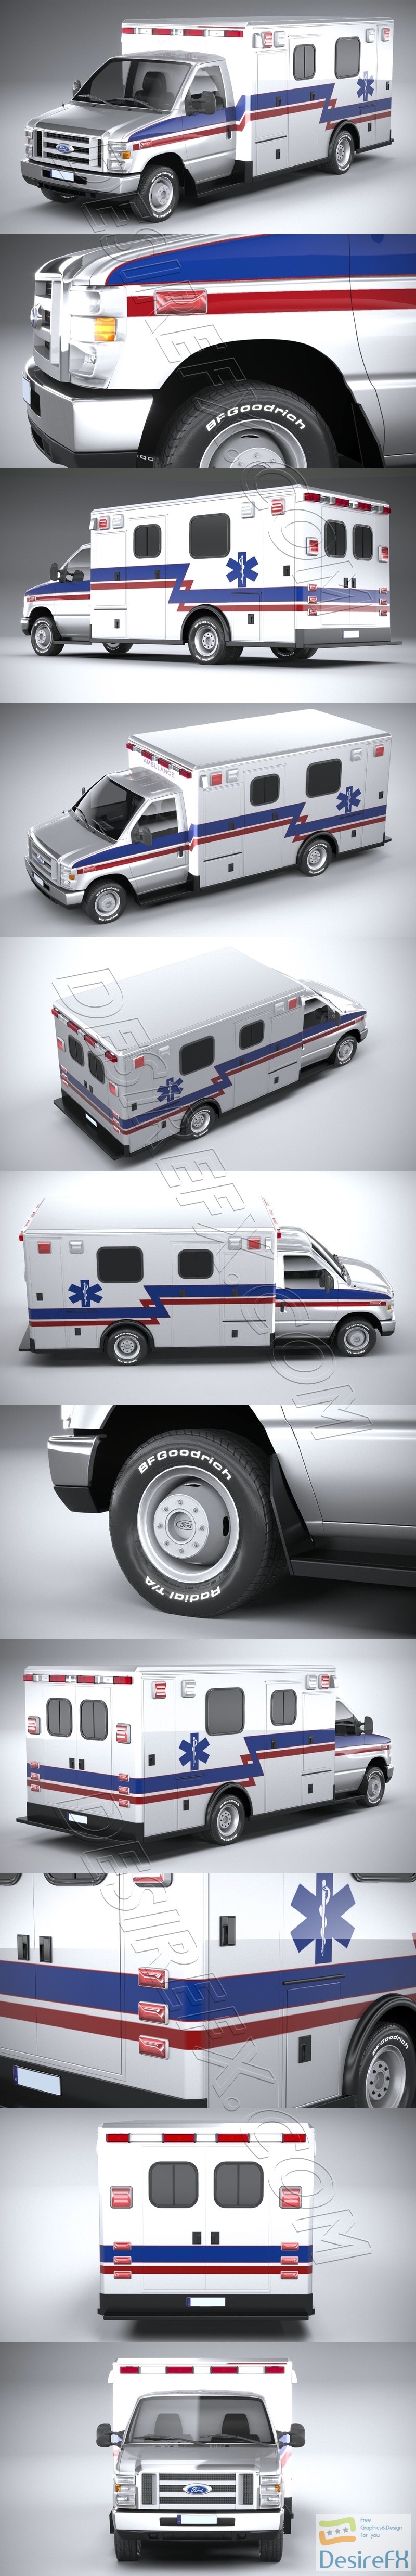 Ford E-450 Ambulance 2011 LowPoly 3D Model